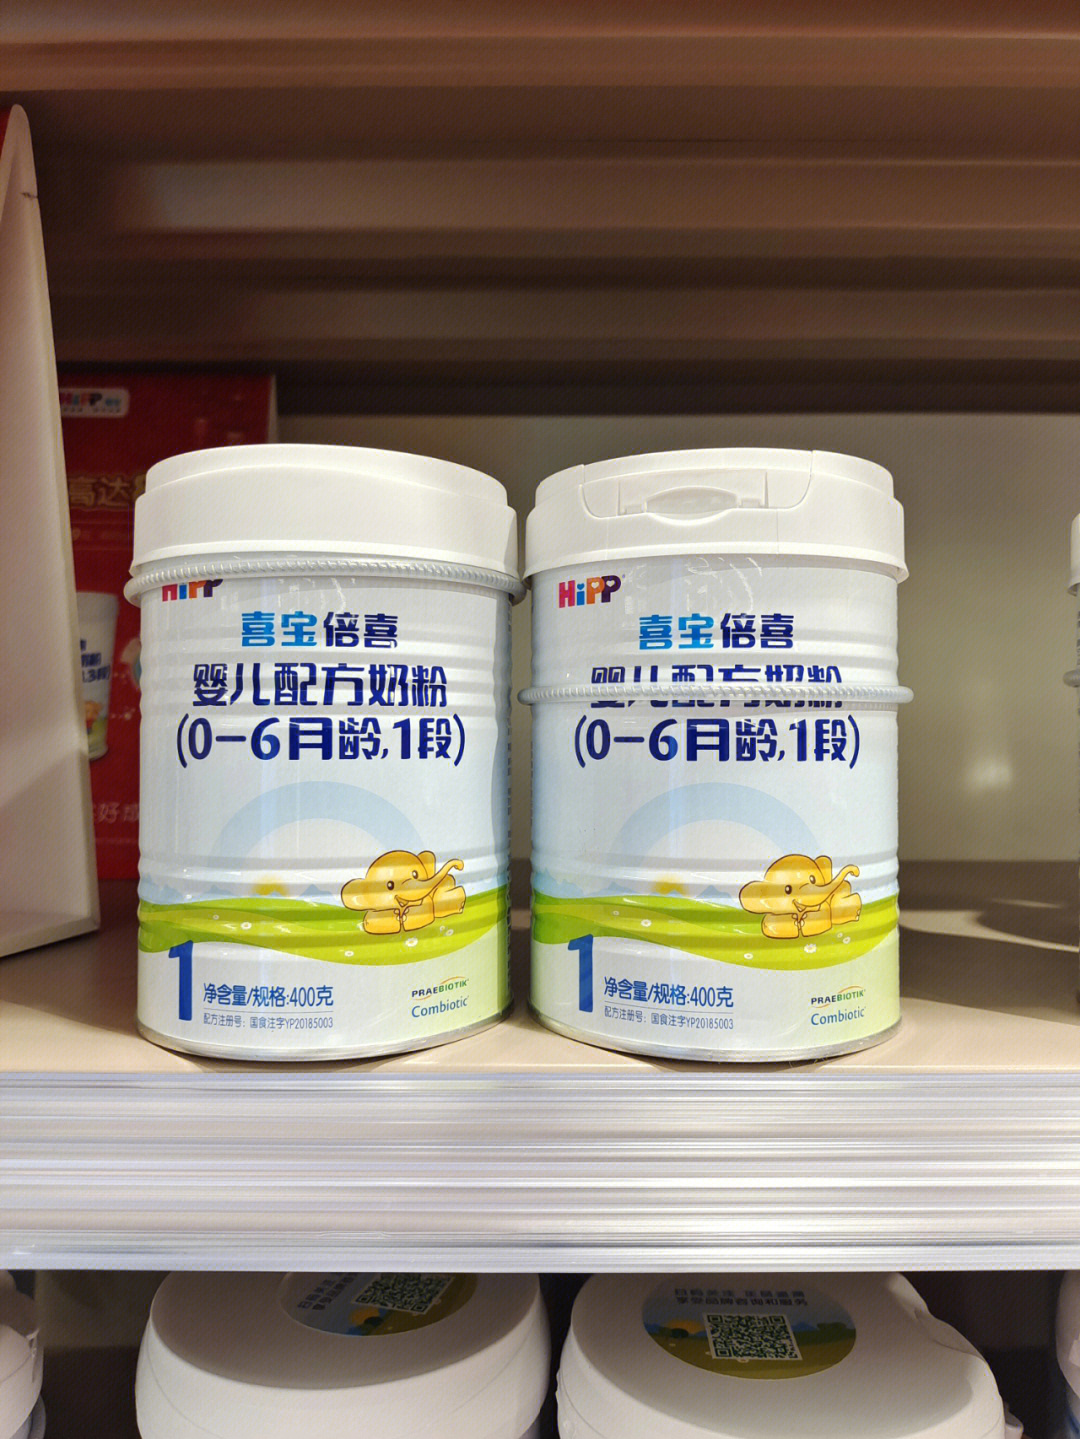 喜宝益生元系列婴儿配方奶粉